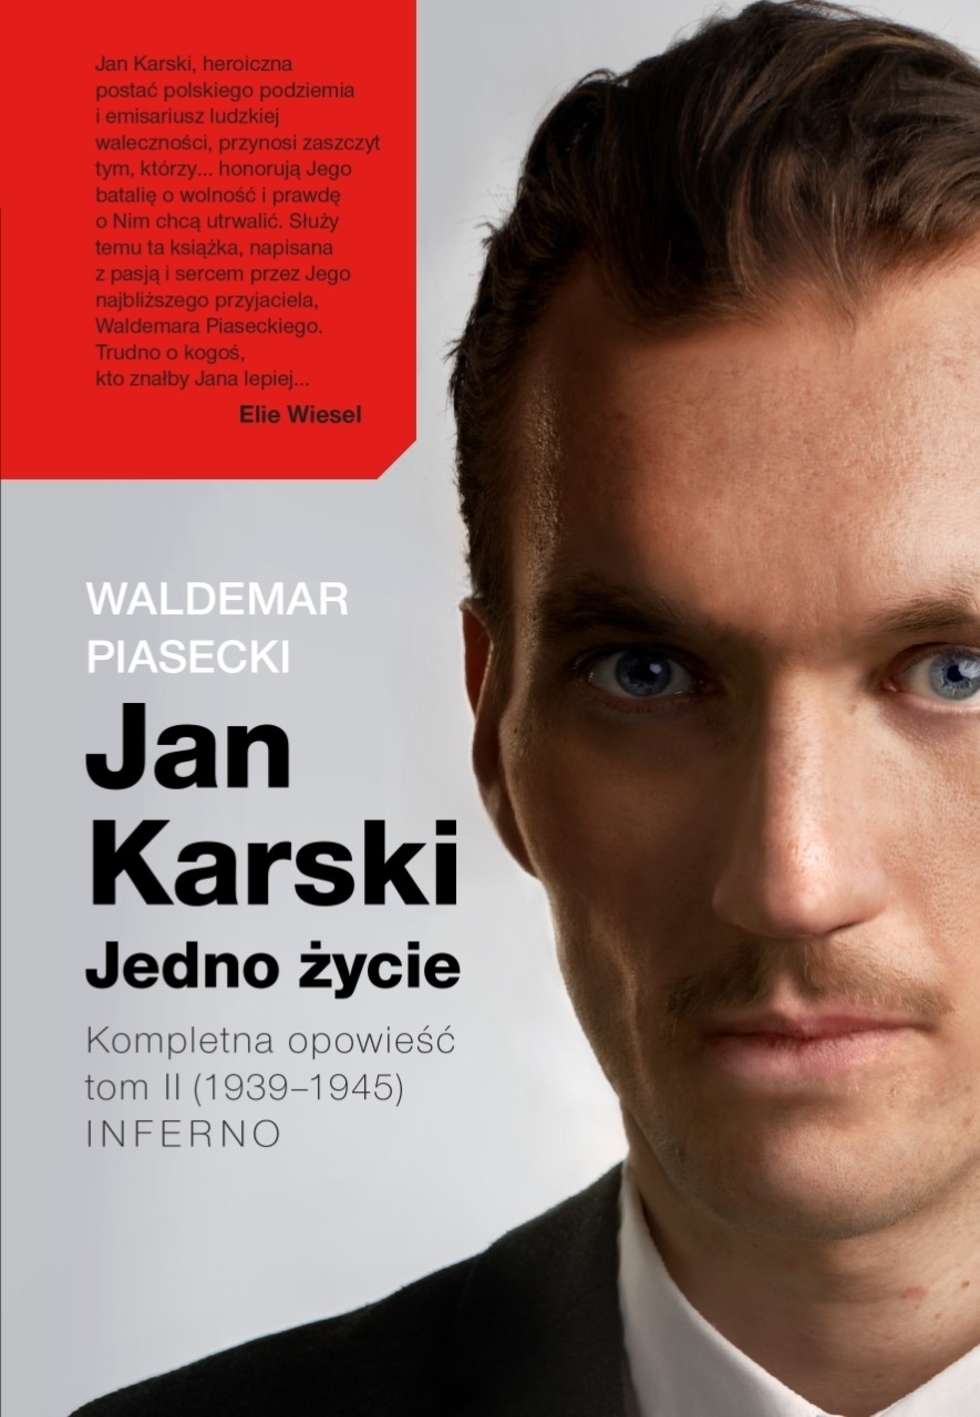  <p>Okładka drugiego tomu &bdquo;Inferno&rdquo; trylogii biograficznej &bdquo;Jan Karski. Jedno życie&rdquo;</p>